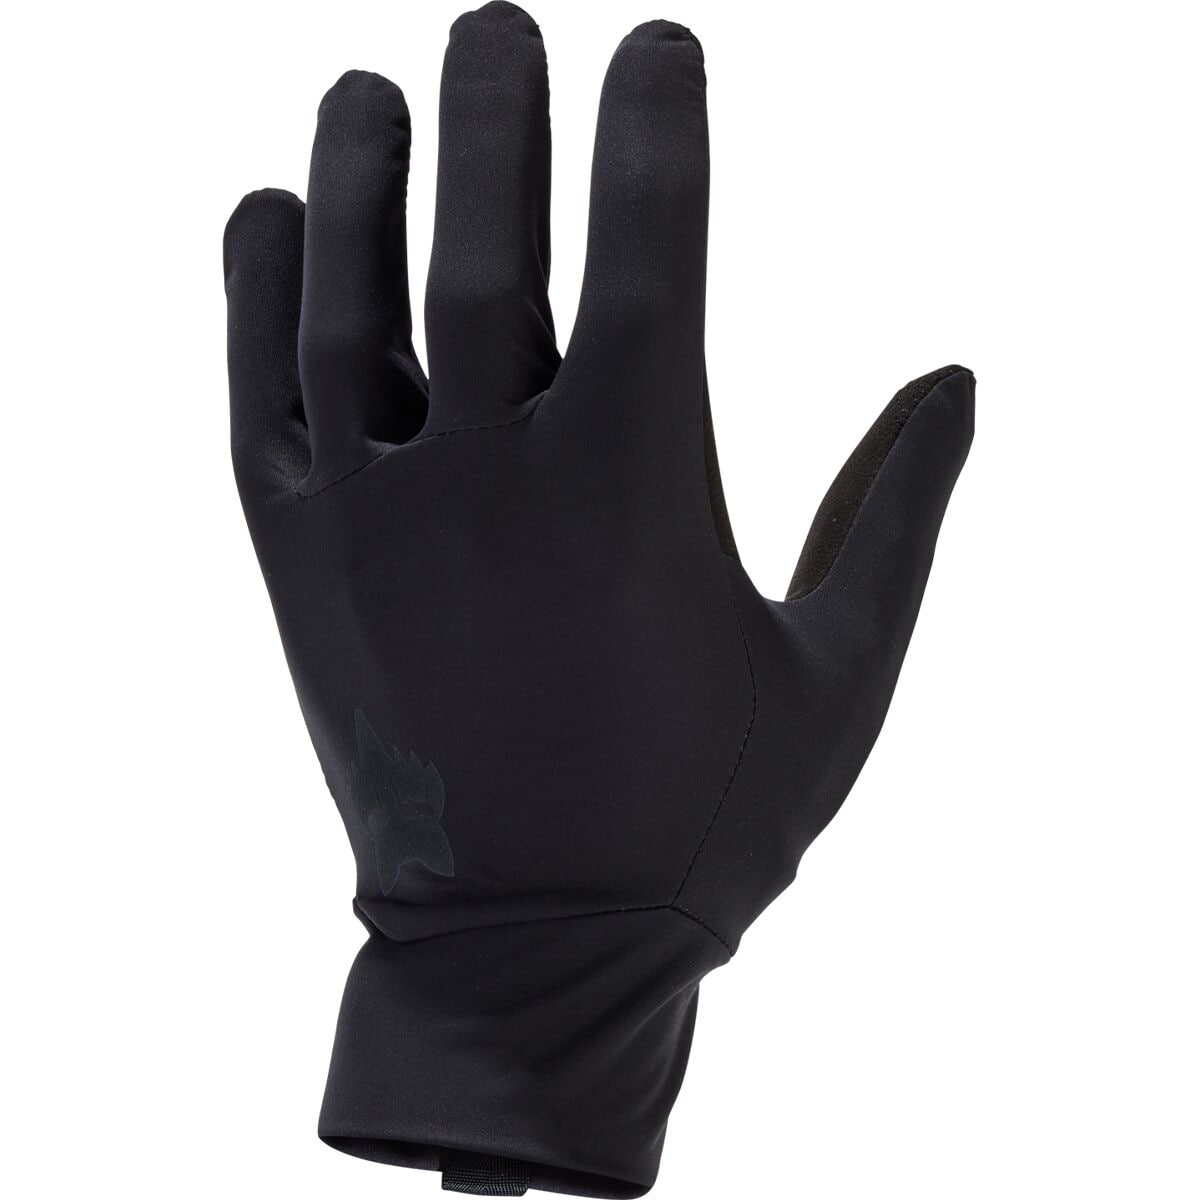 Fox Racing Ranger Water Glove - Men's